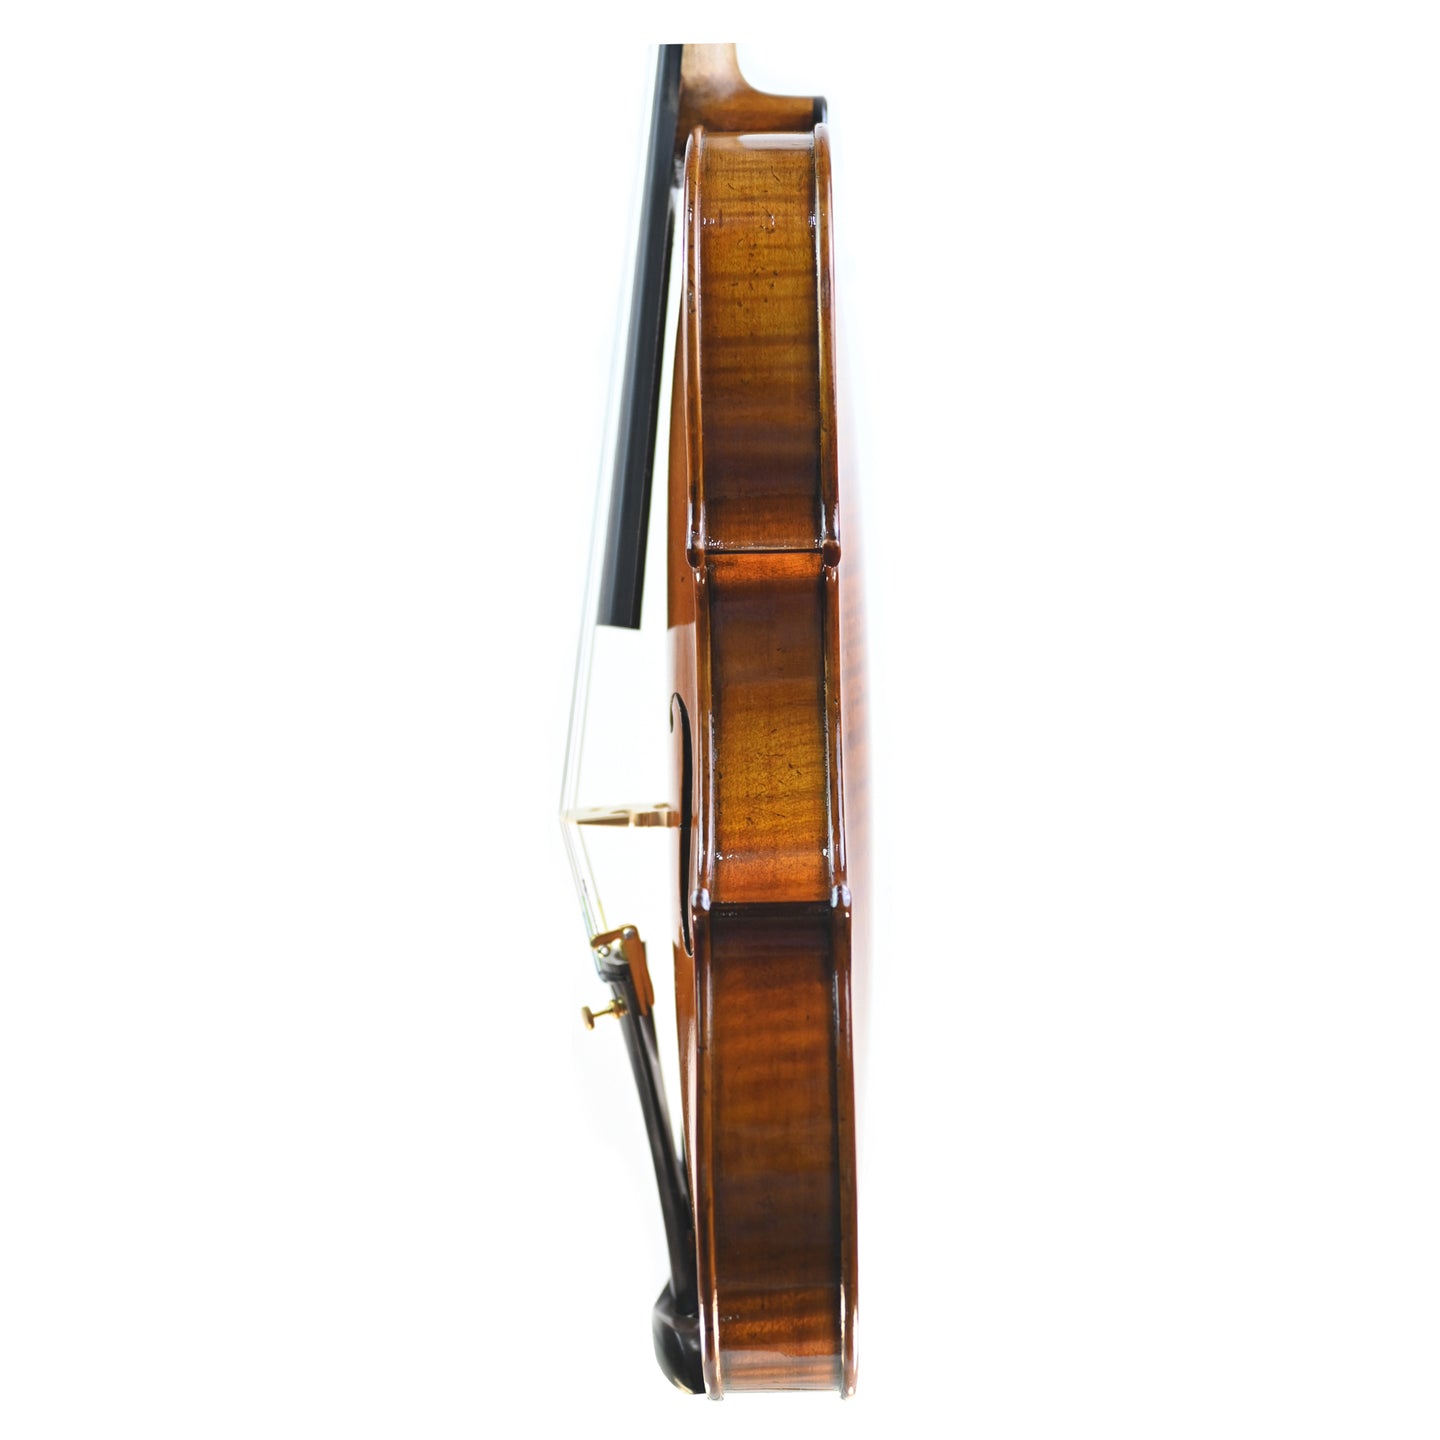 7007 full size beginner violin left rib